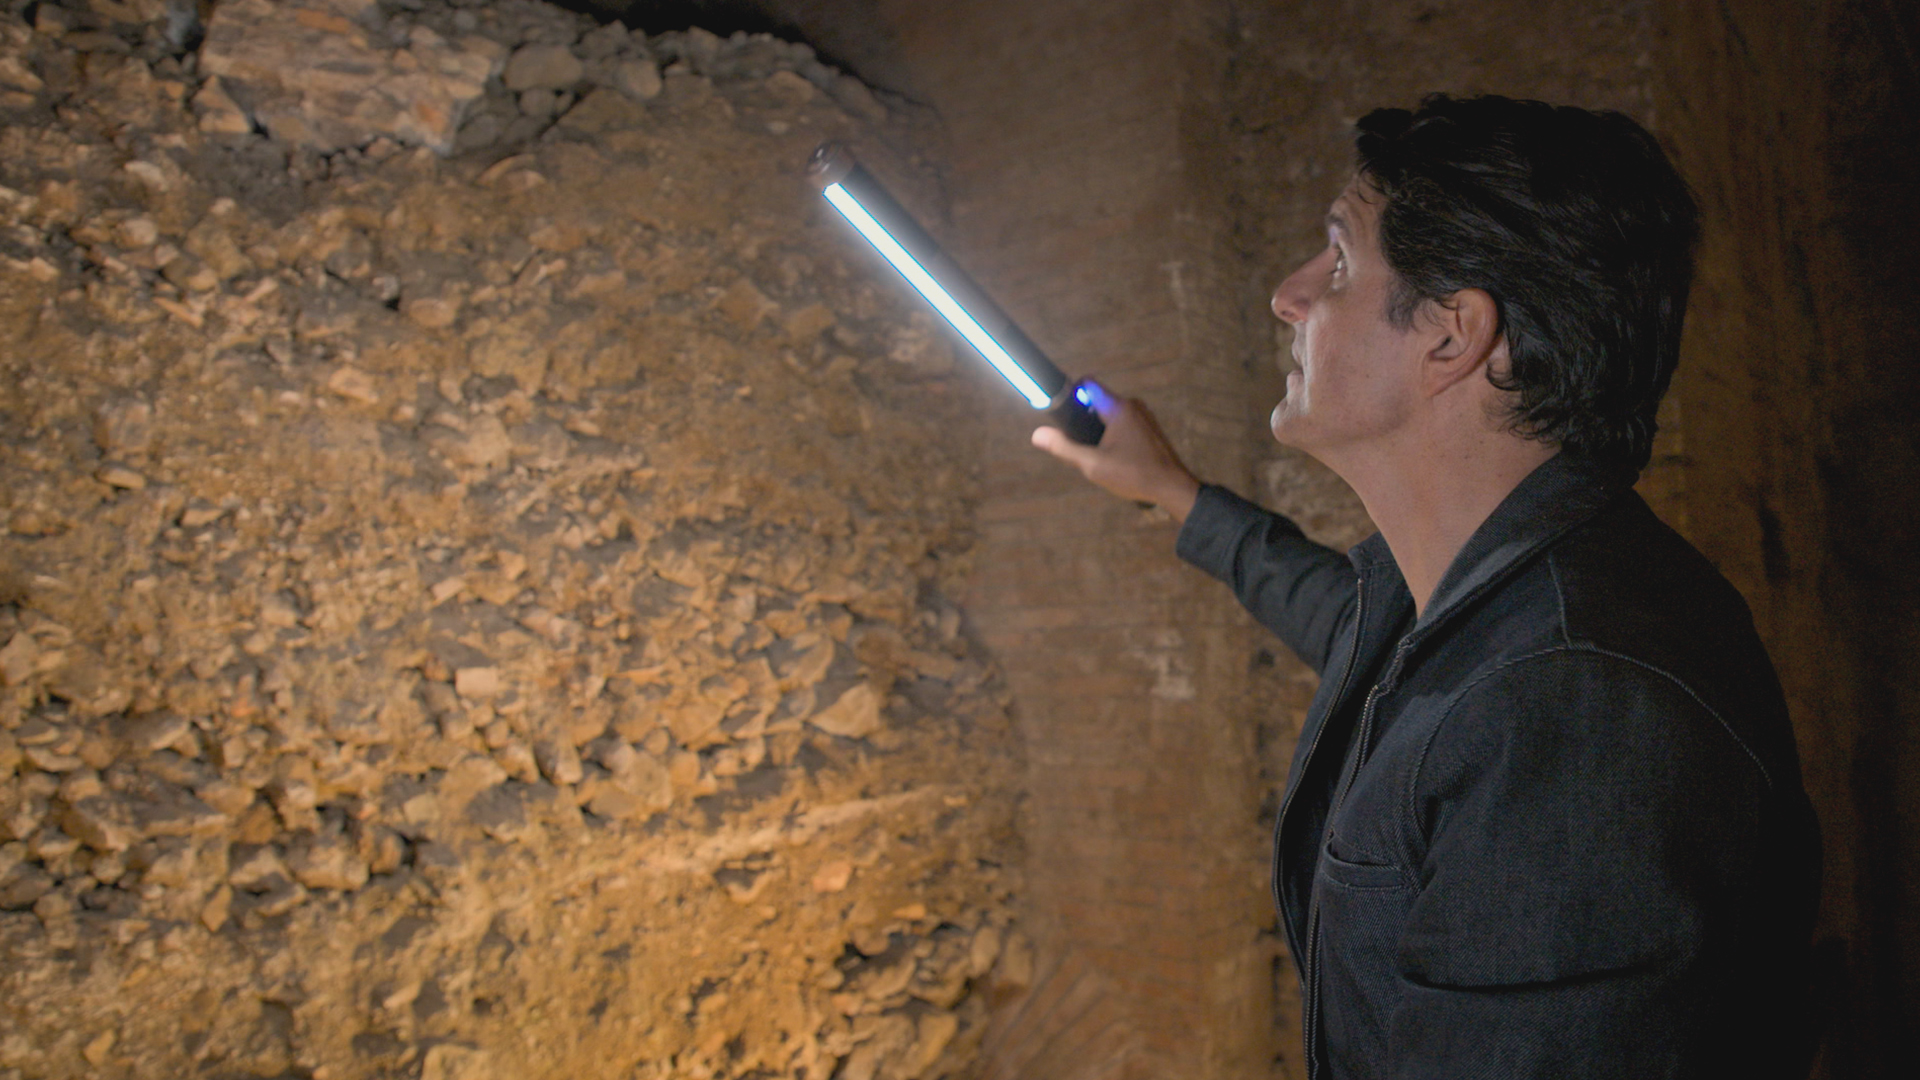 عالم الآثار داريوس أريا يستكشف الأطلال المدفونة... [Photo of the day - مايو 2022]